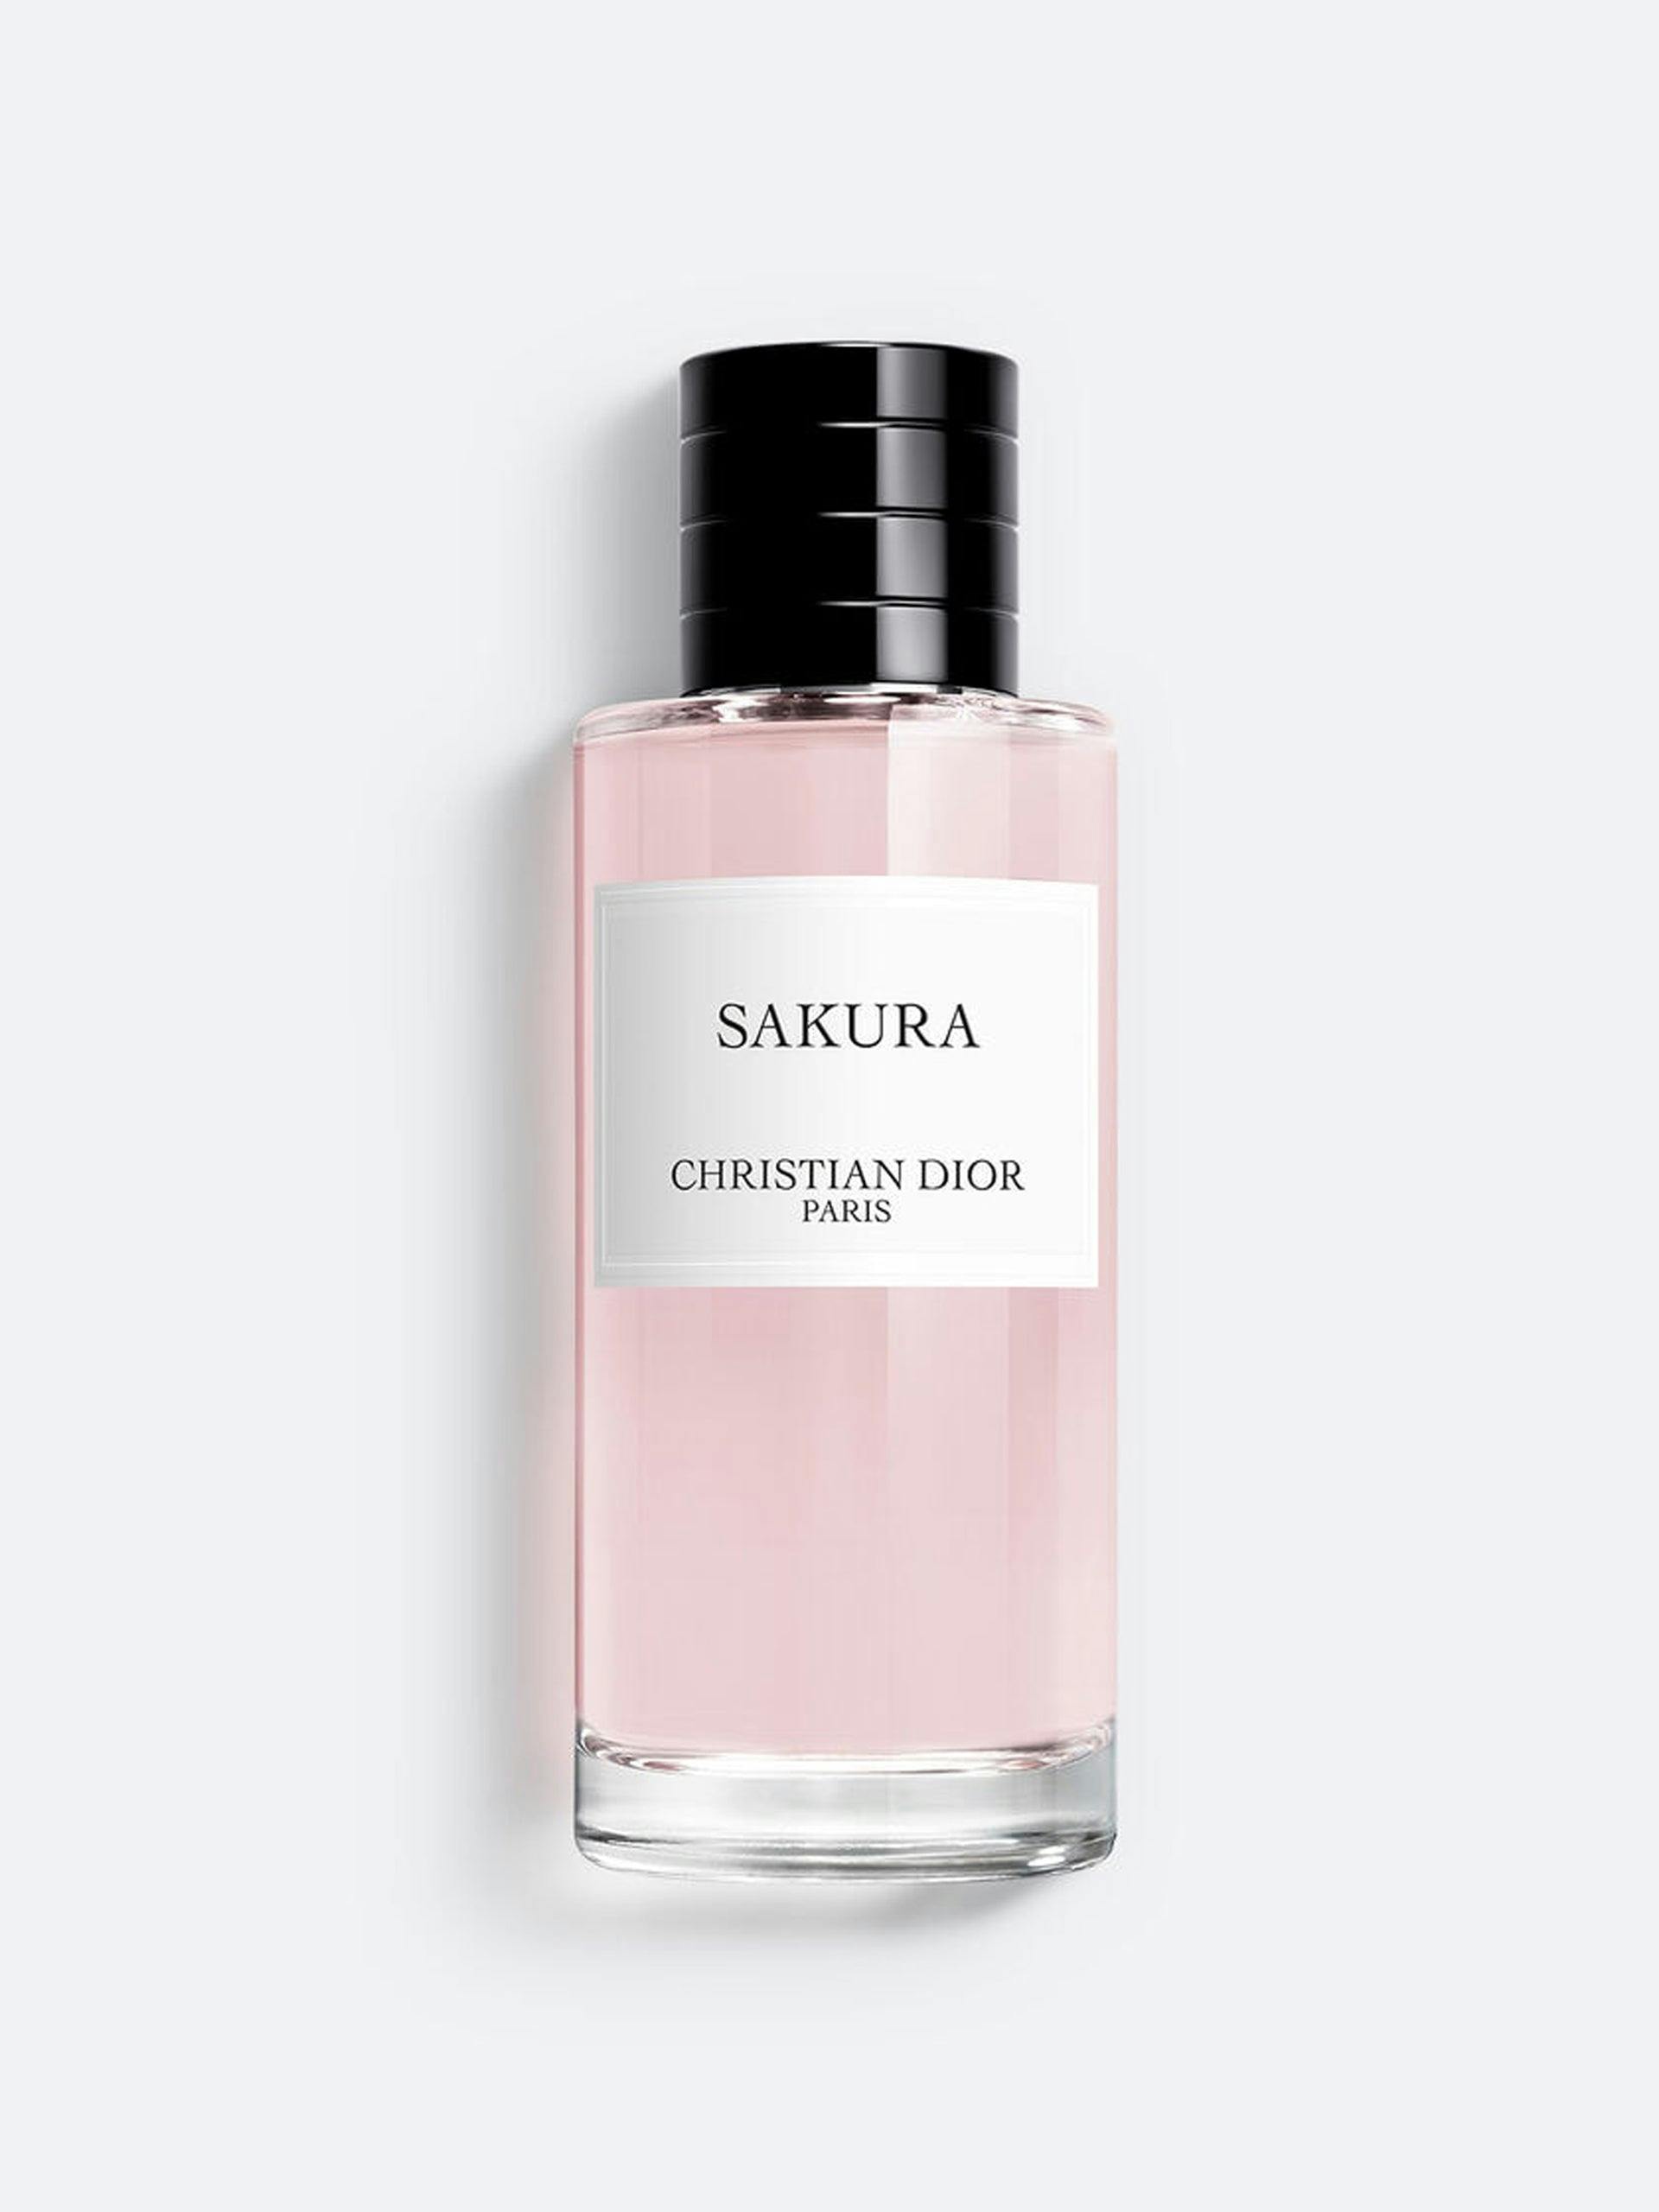 Sakura fragrance